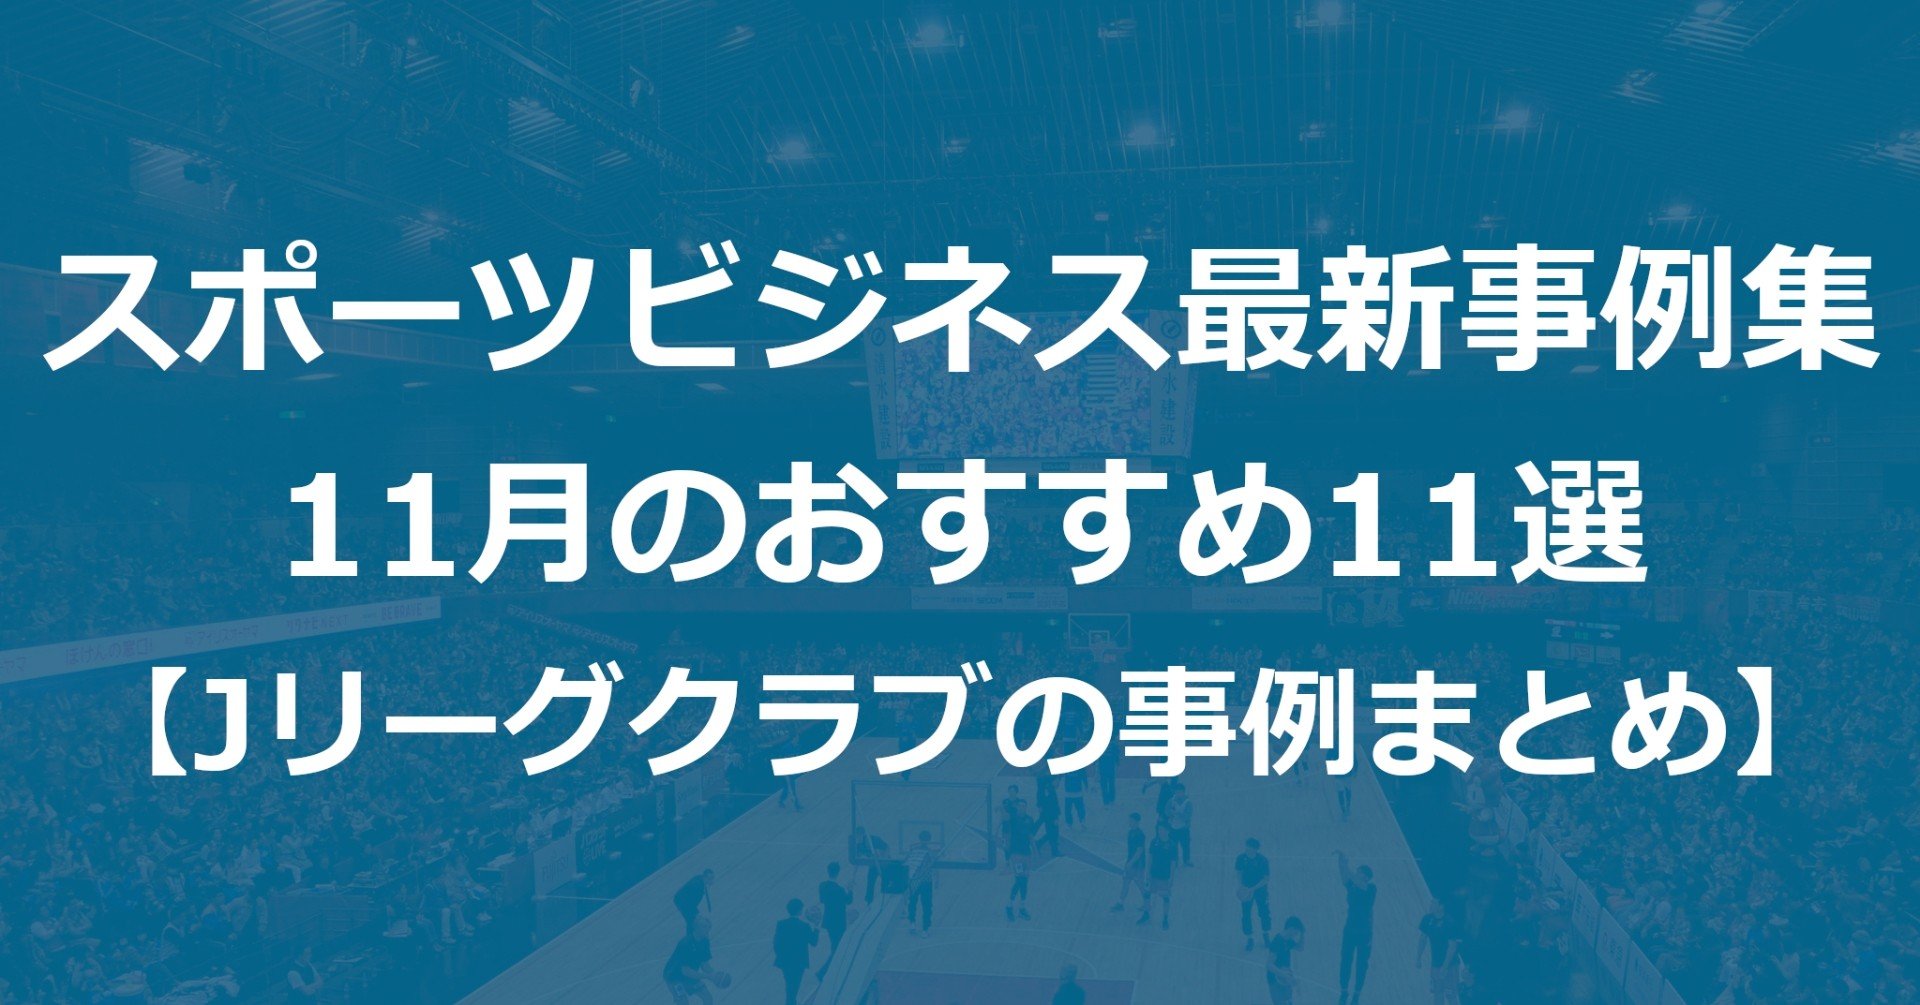 スポーツビジネス最新事例集 11月のおすすめ11選 Jリーグクラブの事例まとめ Akio Yamamoto 山本 明生 Note